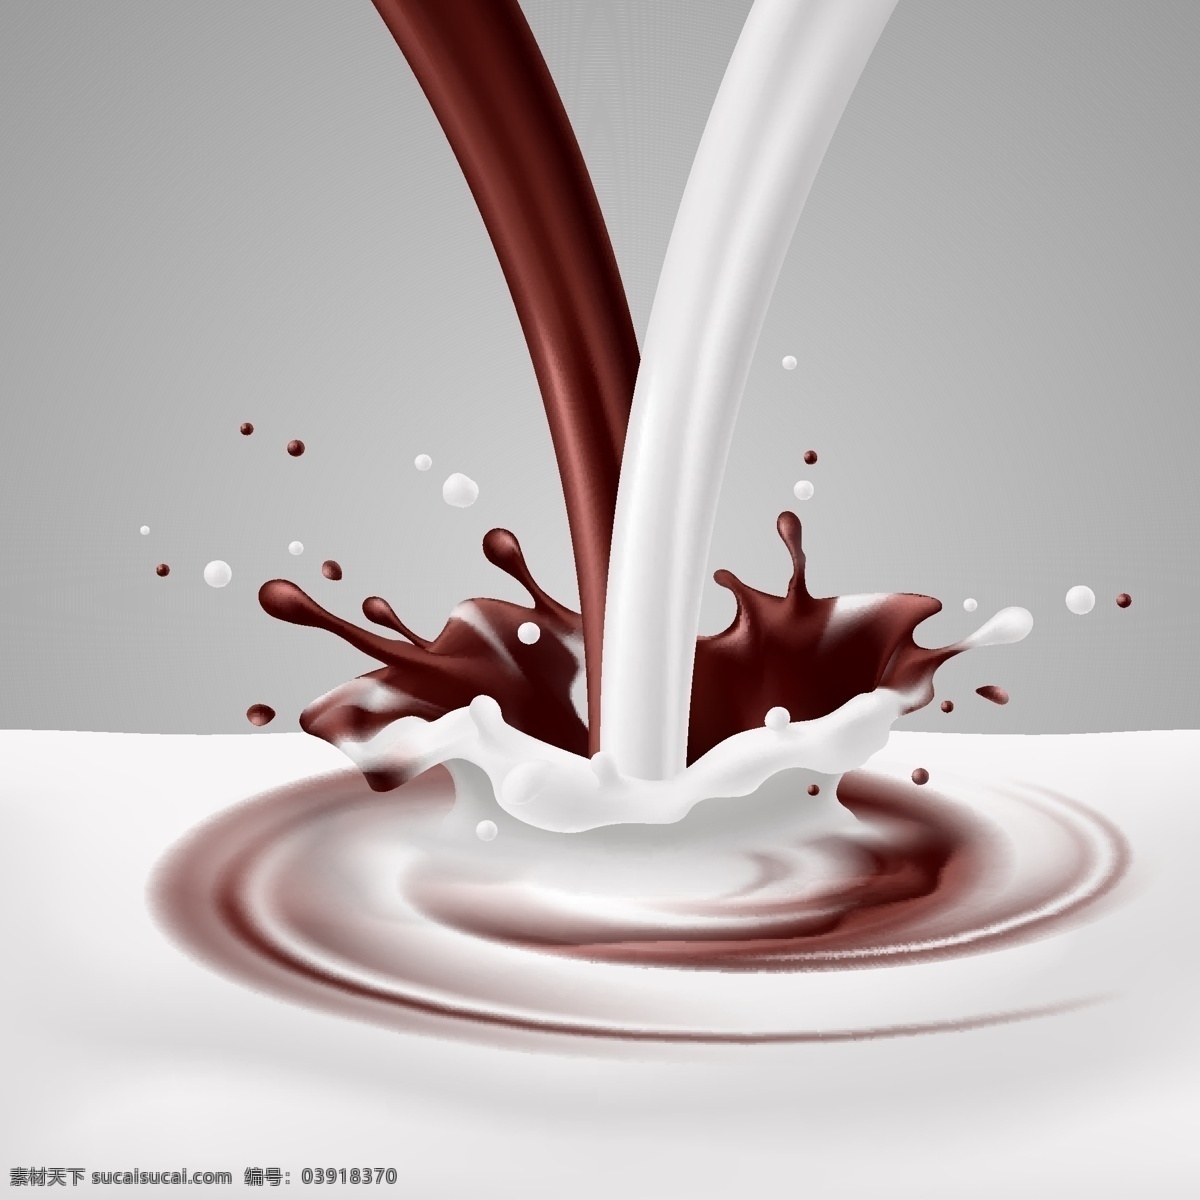 巧克力 牛奶 混合 导入 奶花 饮料 食物 生活百科 矢量素材 灰色